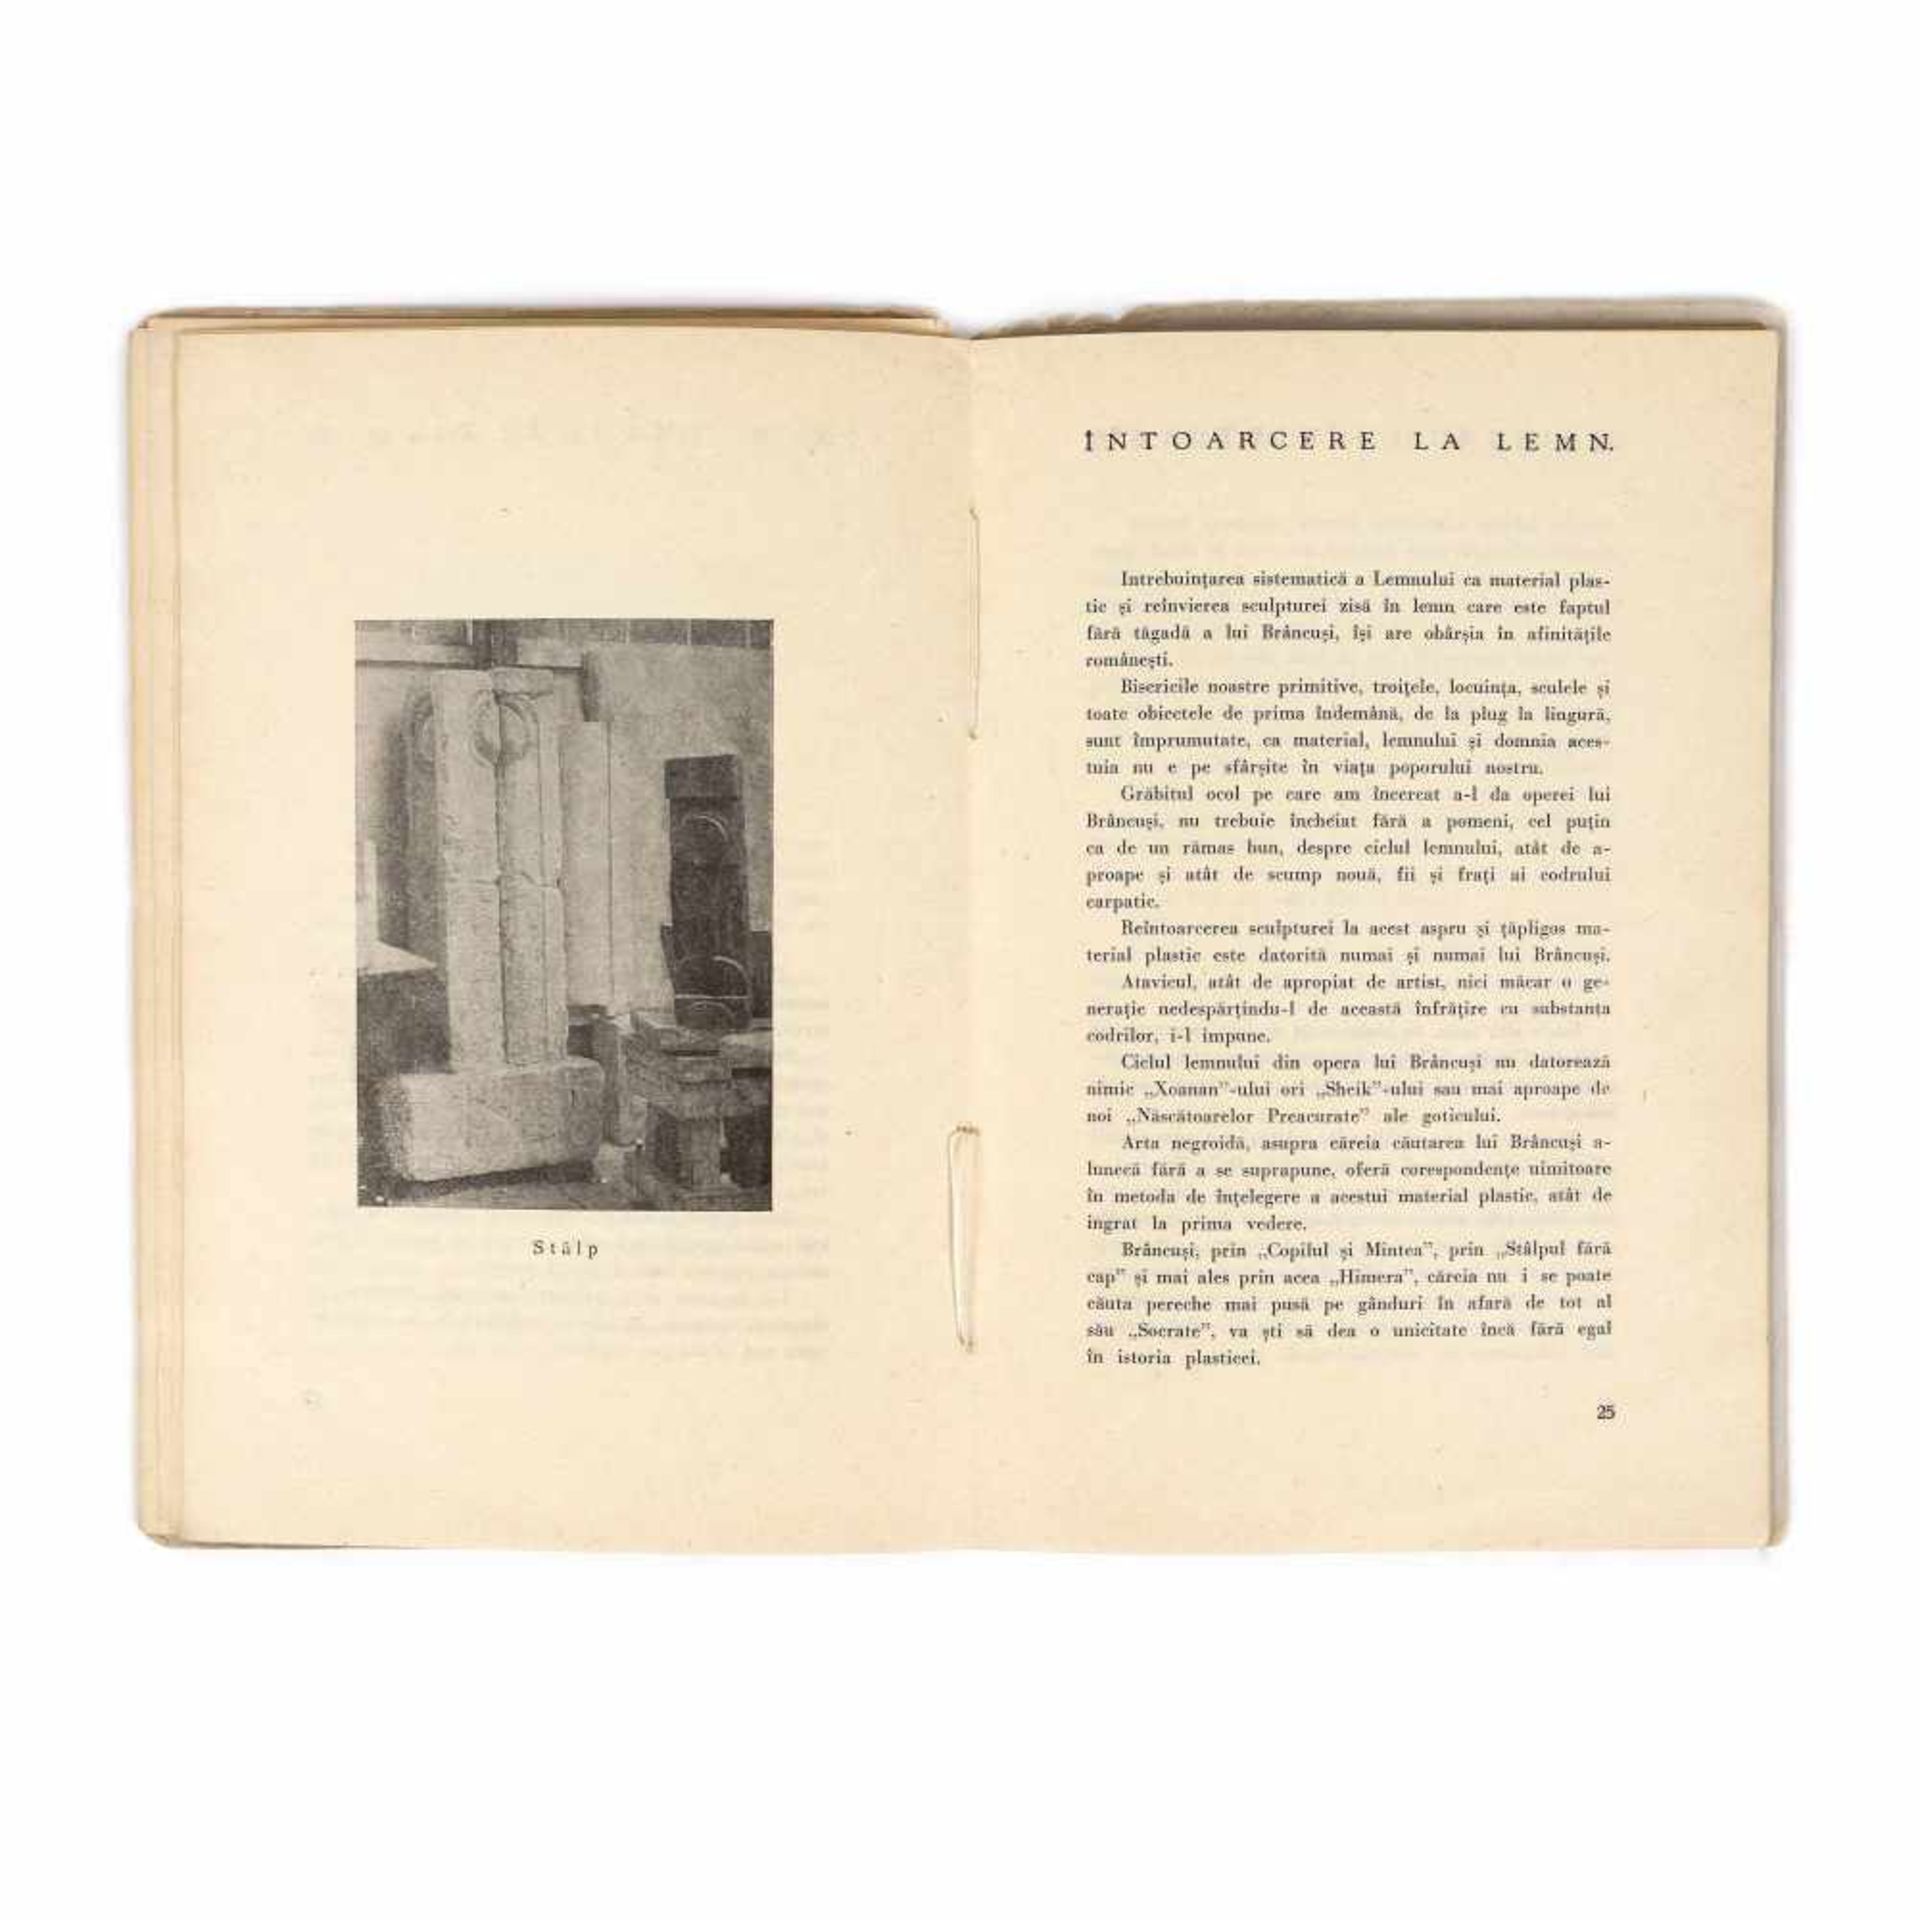 "Cartea a doua despre Constantin Brâncuși" ("The second book about Constantin Brâncuși"), by Vas - Image 6 of 7